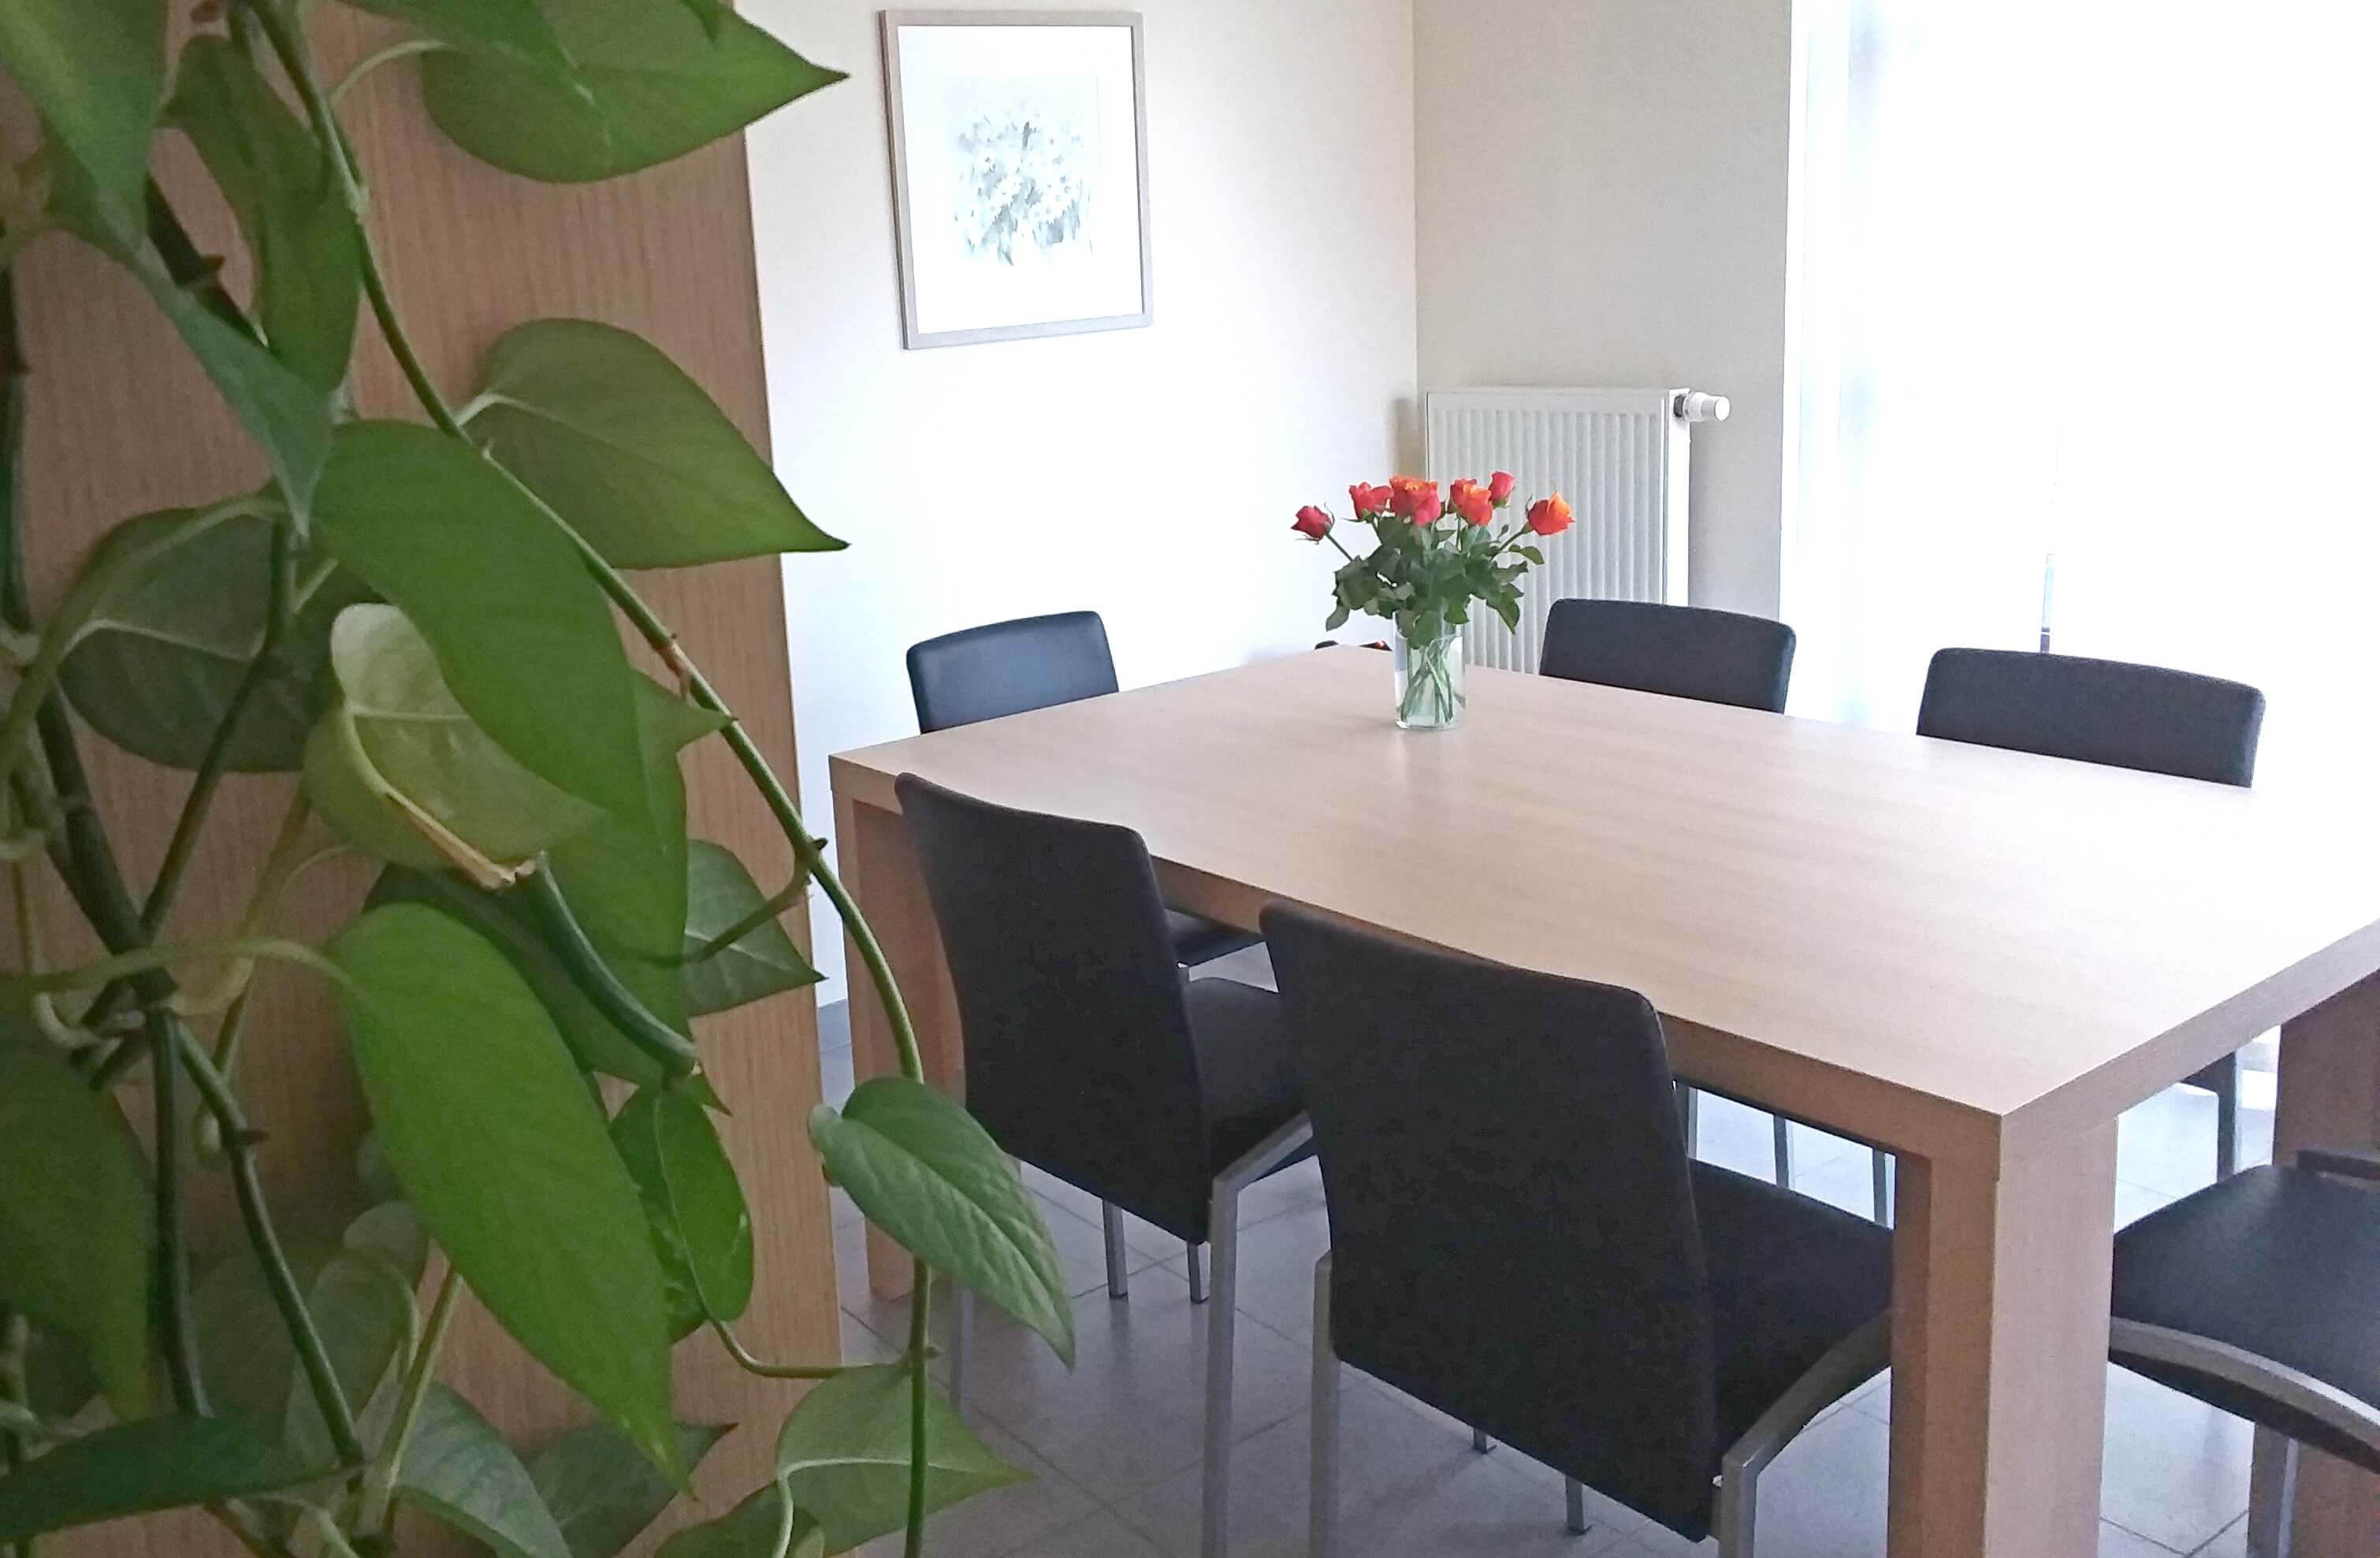 kleine aangename vergaderruimte geschikt voor teamvergadering, sollicitatiegesprek, ...